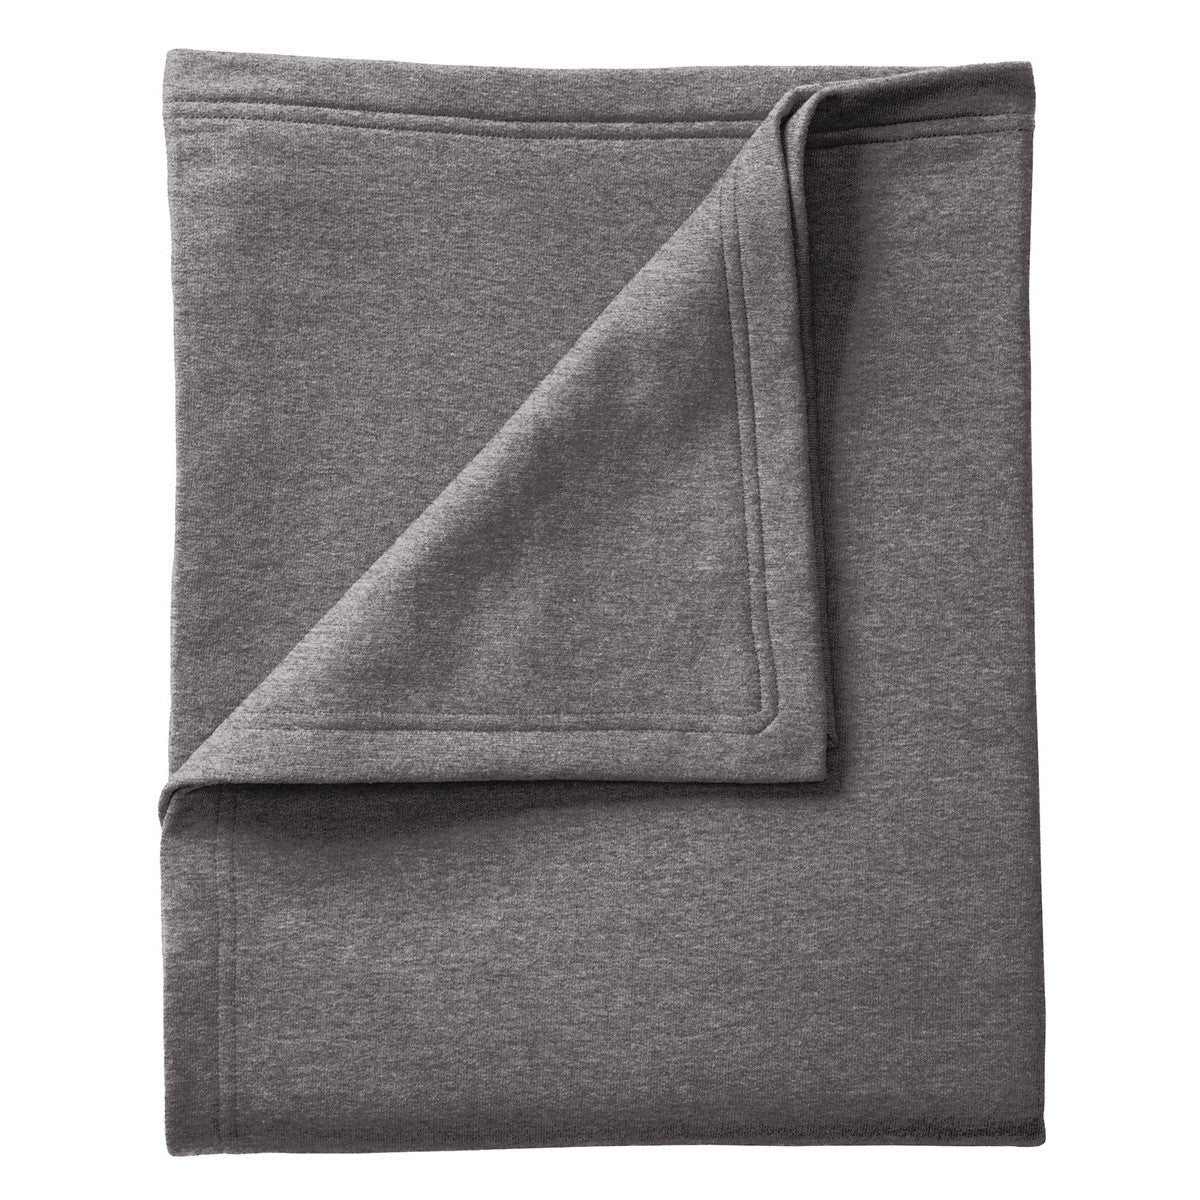 Core Fleece Sweatshirt Blanket - Dark Heather Grey